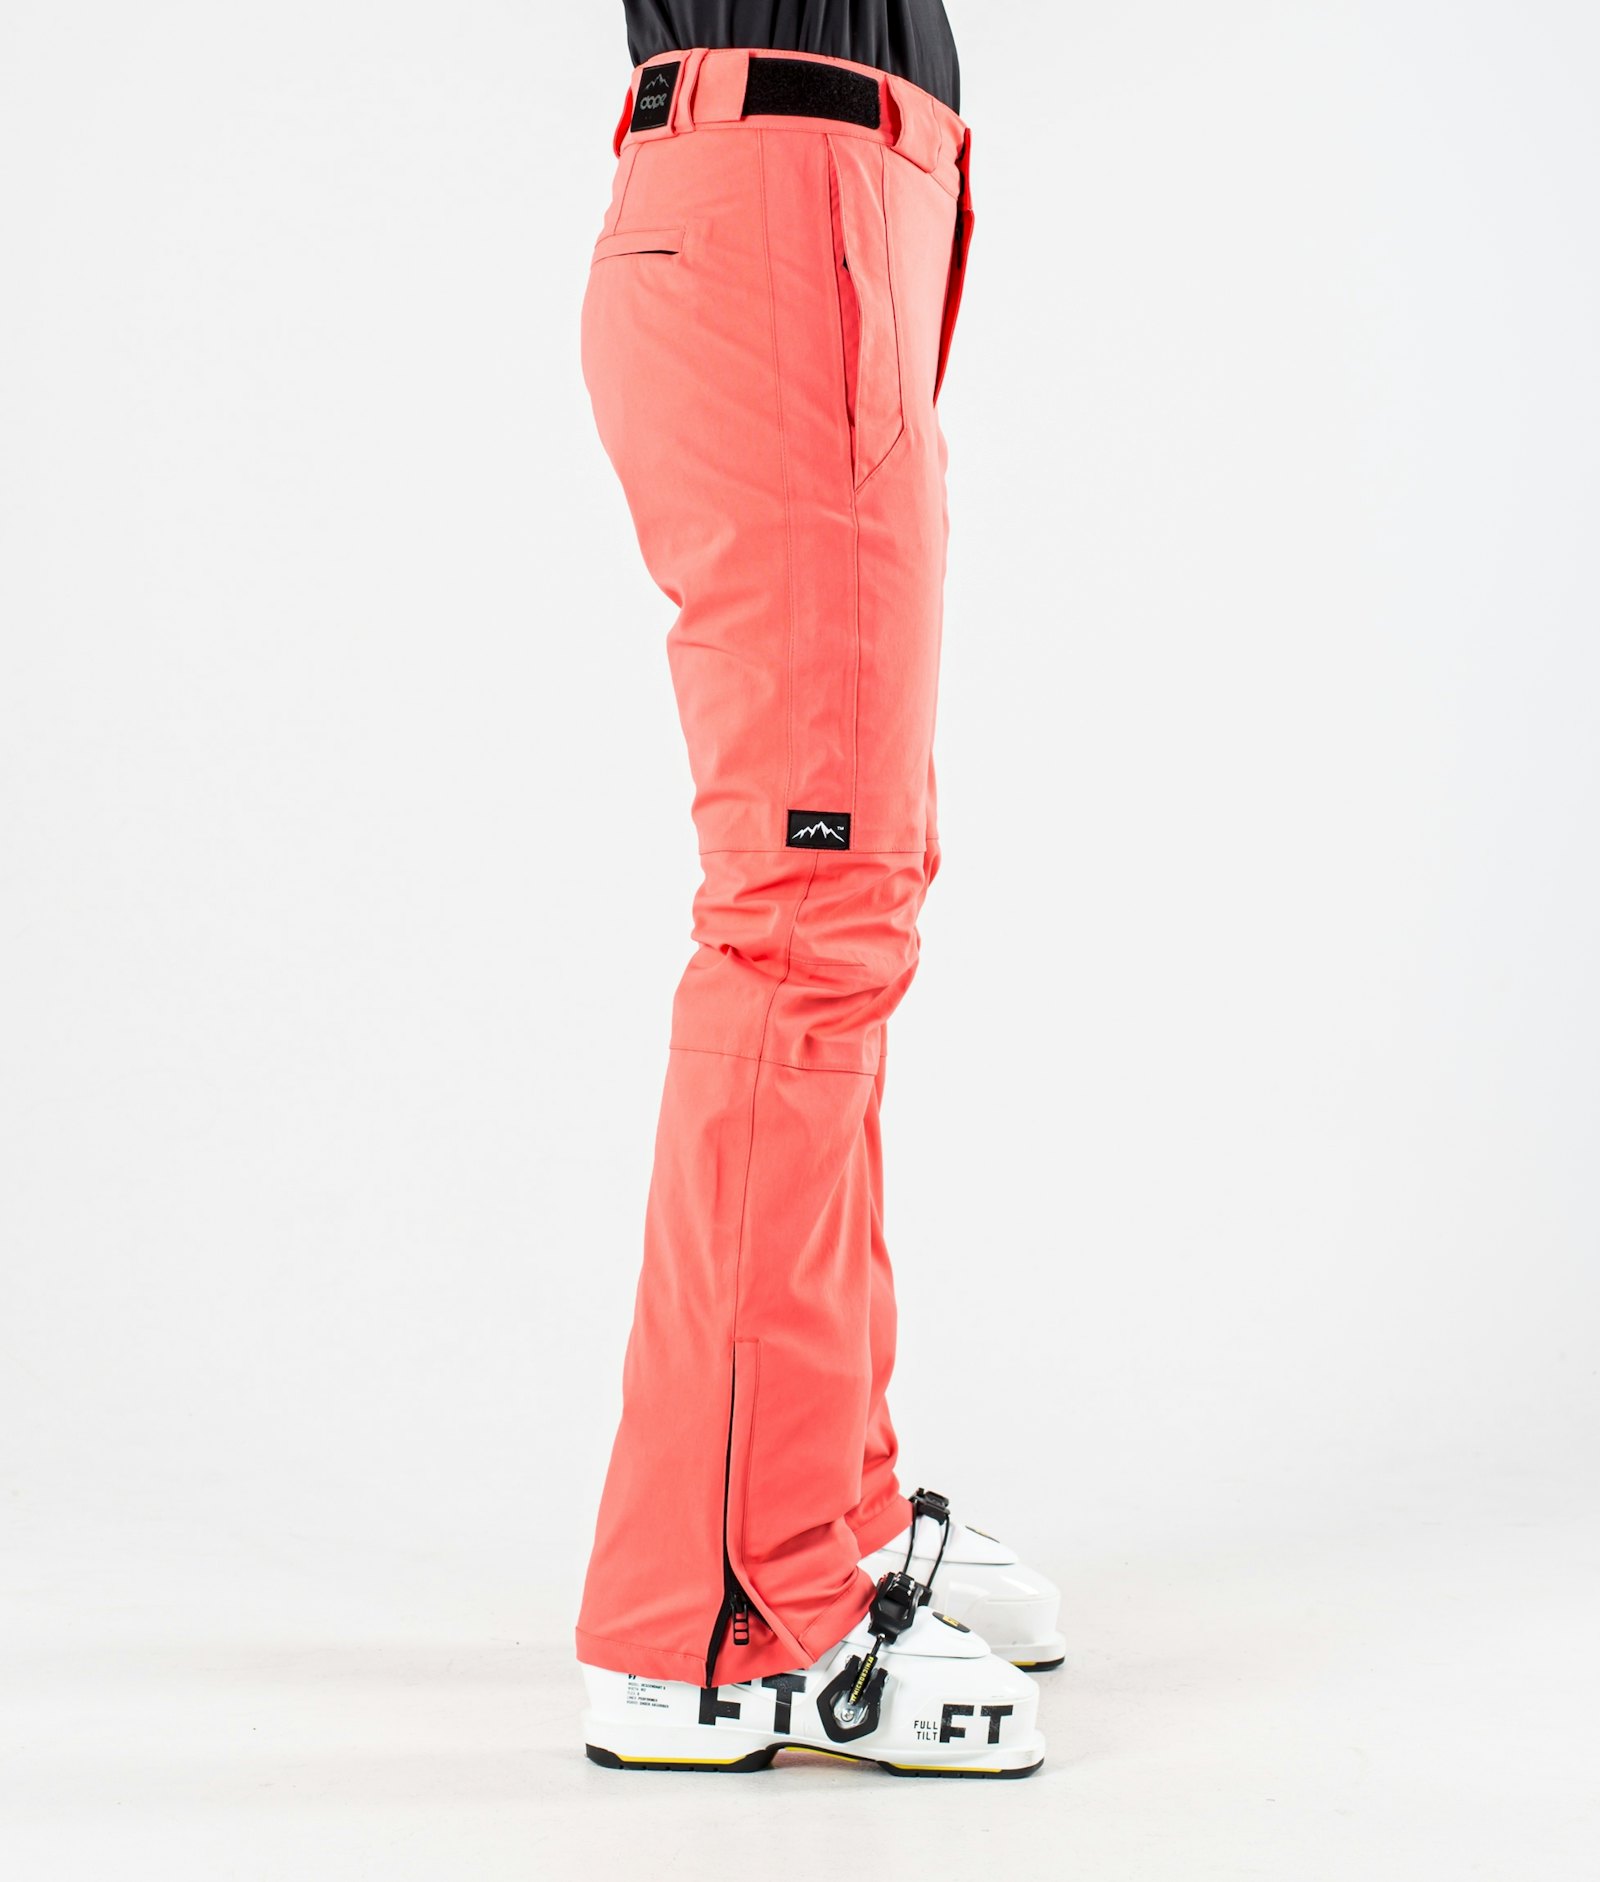 Con W 2020 Pantalon de Ski Femme Coral